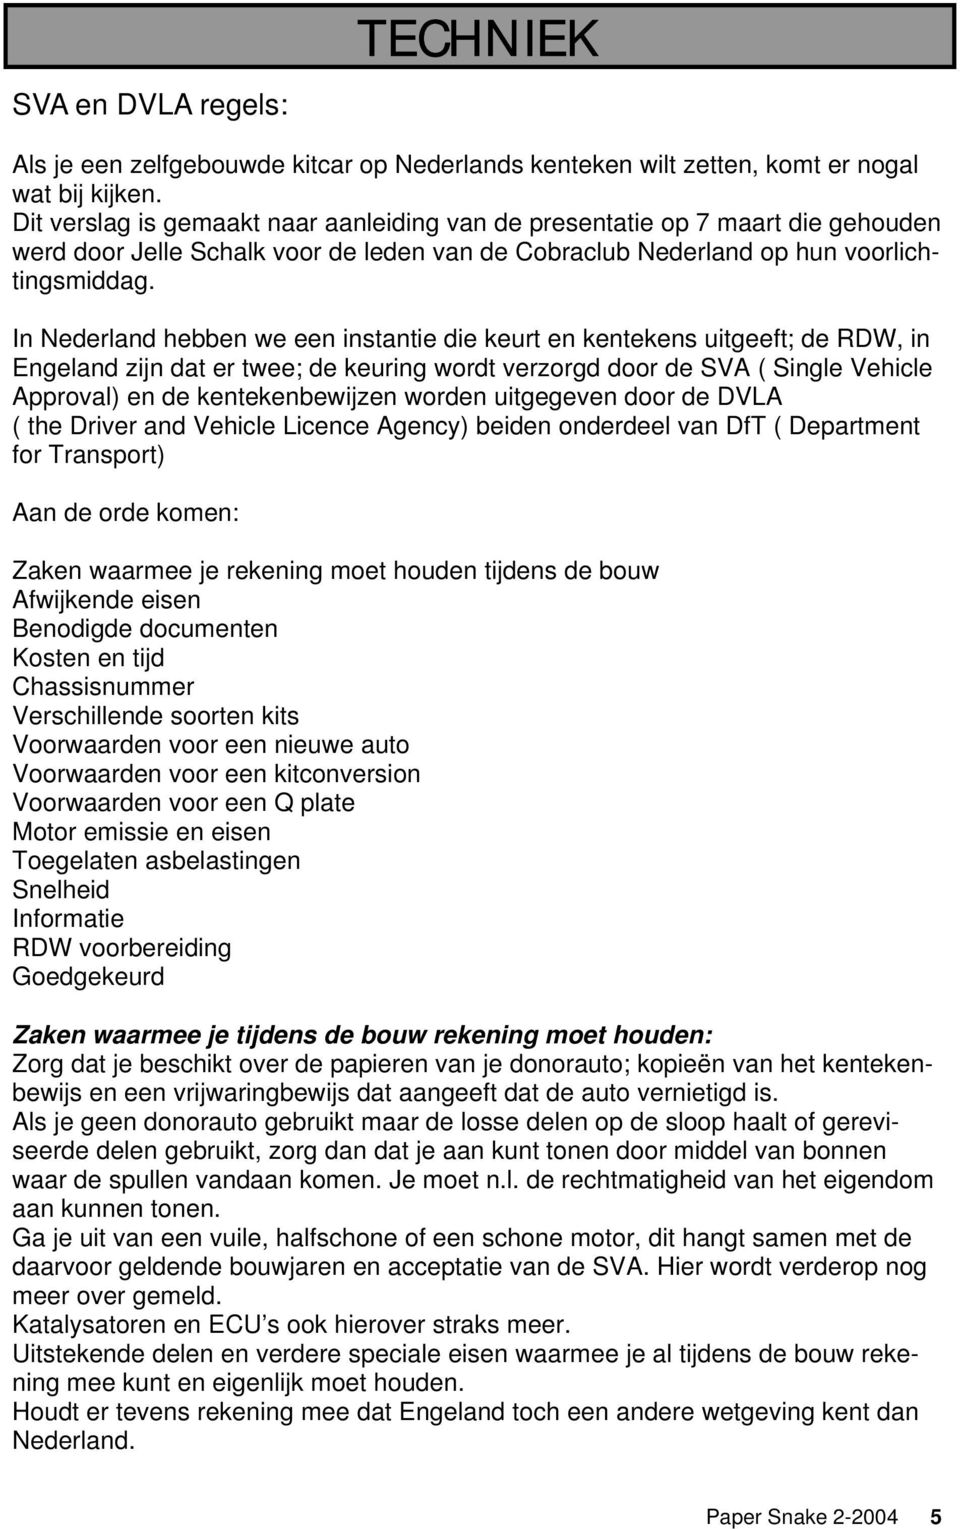 In Nederland hebben we een instantie die keurt en kentekens uitgeeft; de RDW, in Engeland zijn dat er twee; de keuring wordt verzorgd door de SVA ( Single Vehicle Approval) en de kentekenbewijzen